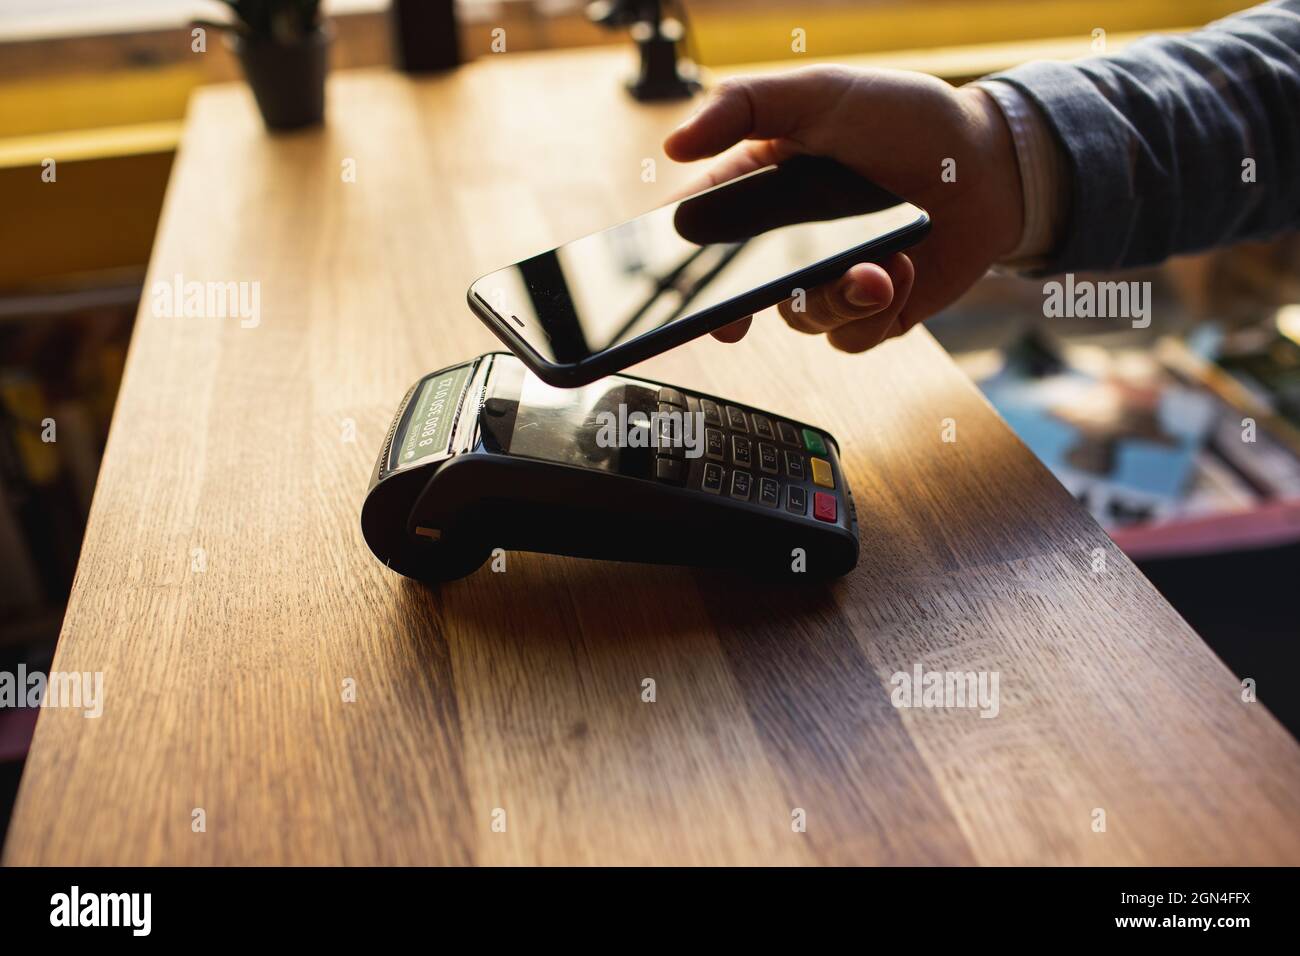 Kontaktloses Bezahlen mit Ihrem Smartphone. Bezahlen mit einem Smartphone-Gerät auf einem Kreditkartenterminal. Drahtlose Zahlung. Stockfoto